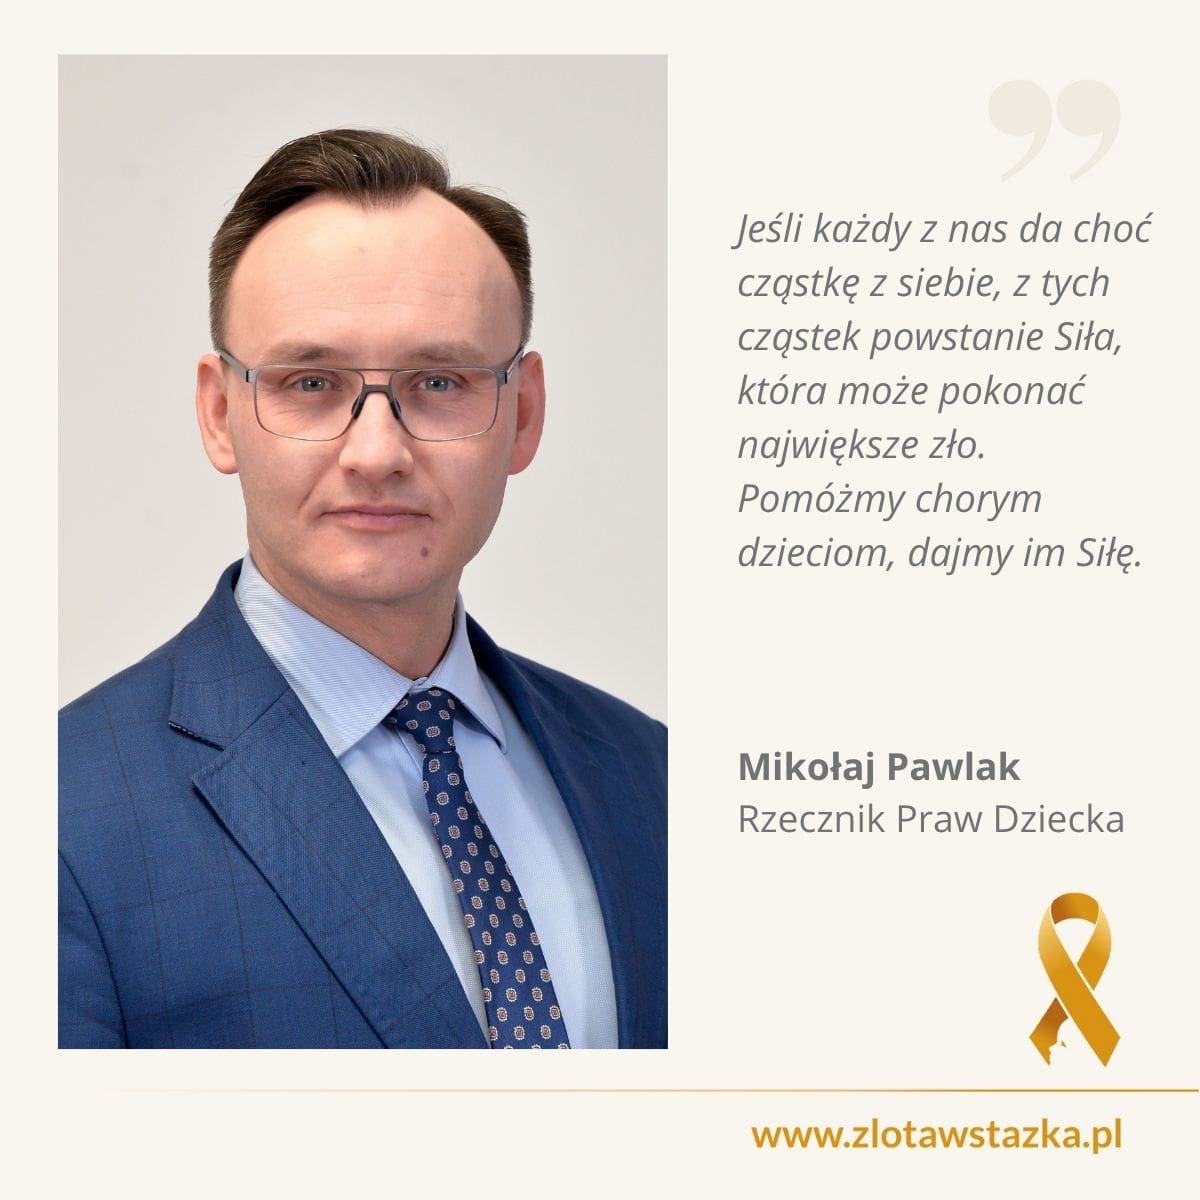 Mikołaj Pawlak, Rzecznik Praw Dziecka